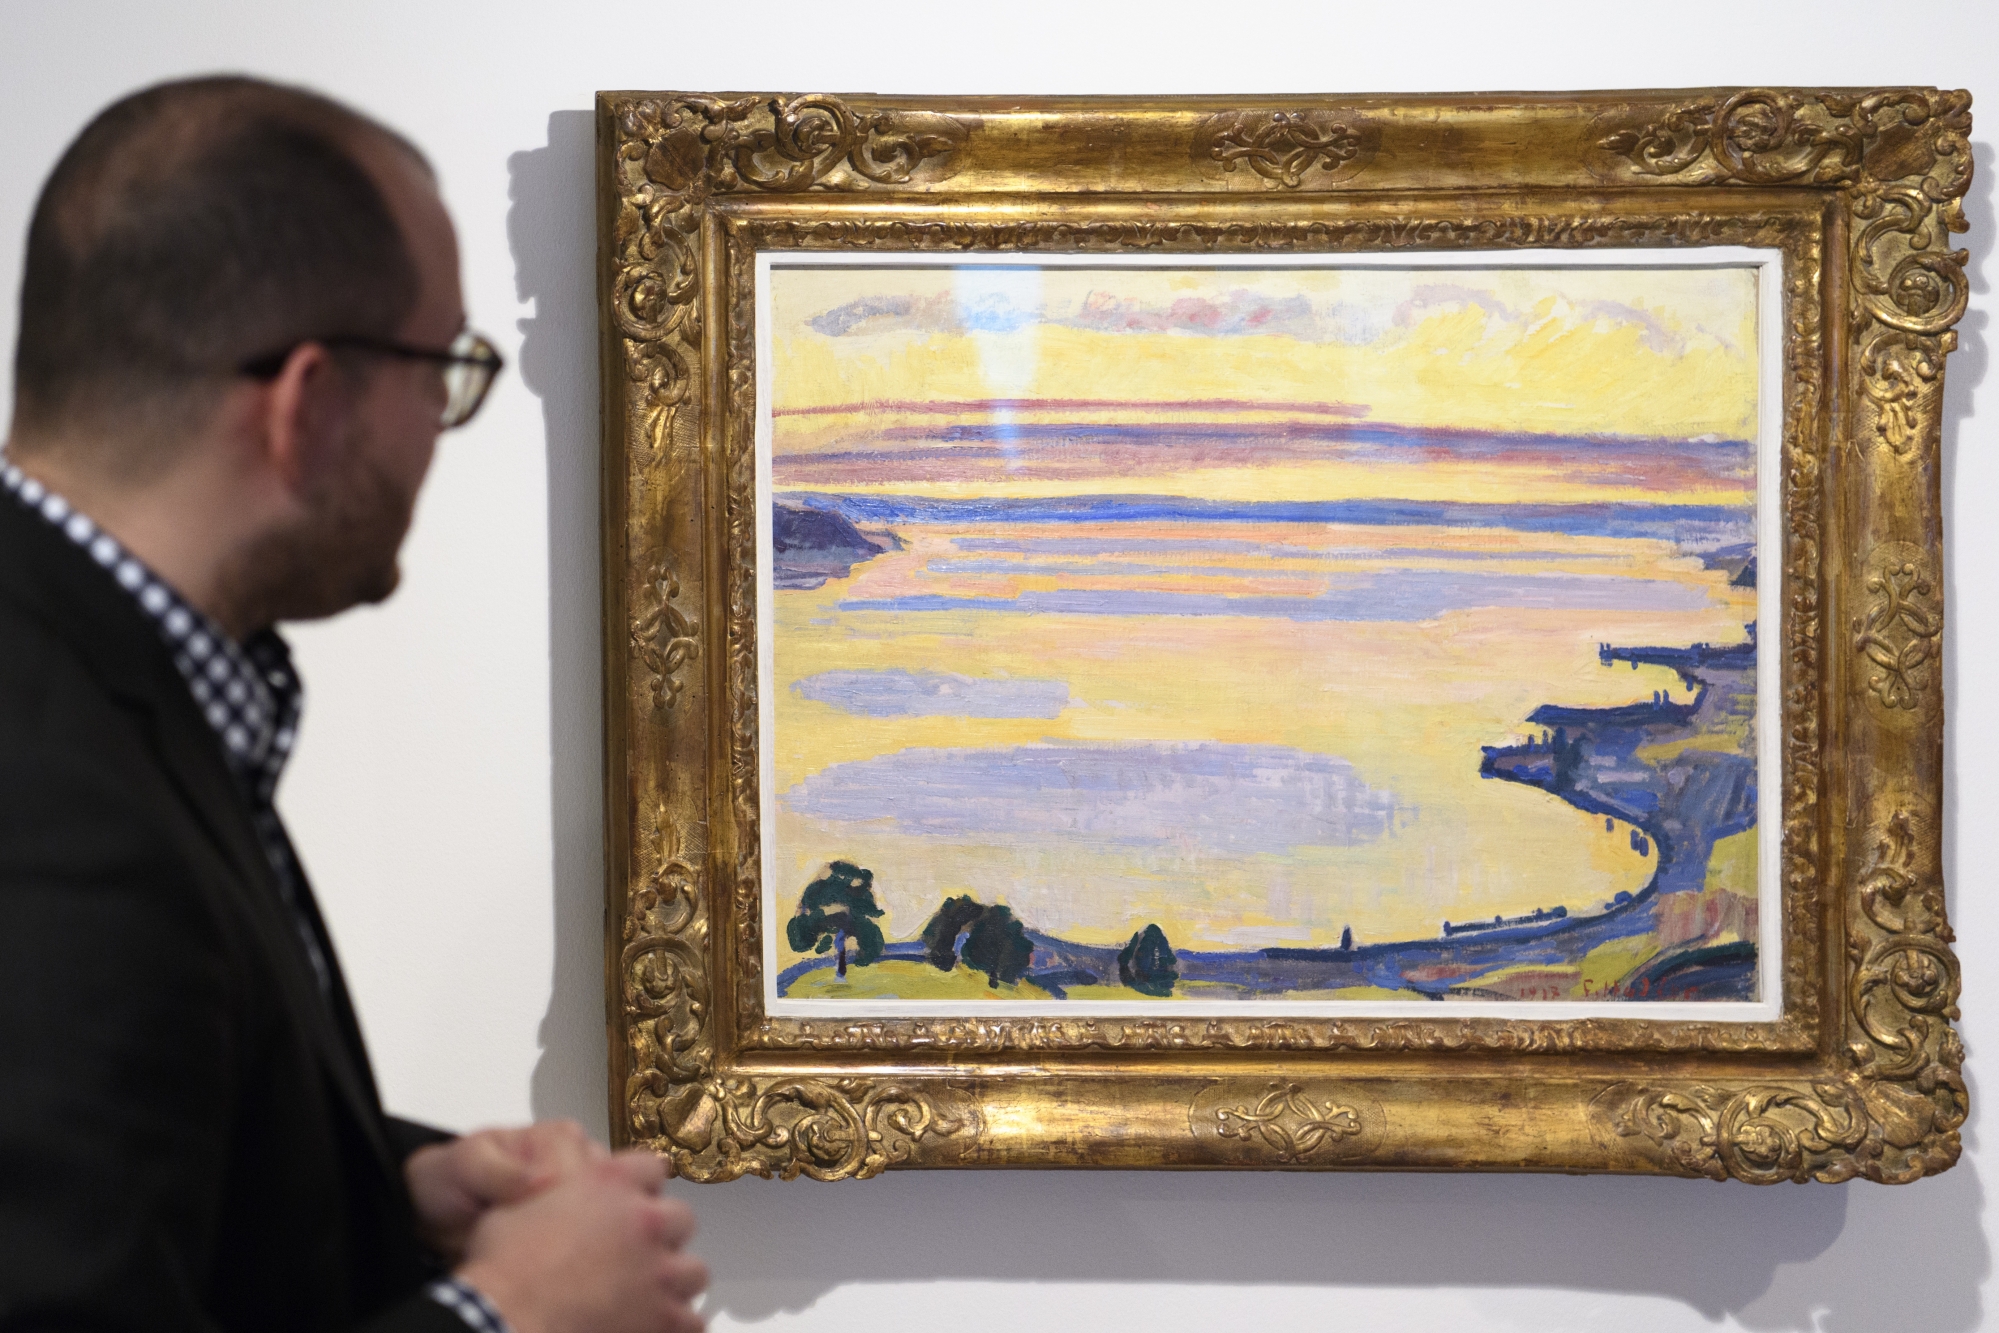 "Le Leman vue de Caux au soleil couchant" est l'une des peintures de Ferdinand Hodler que les visiteurs pourront observer.